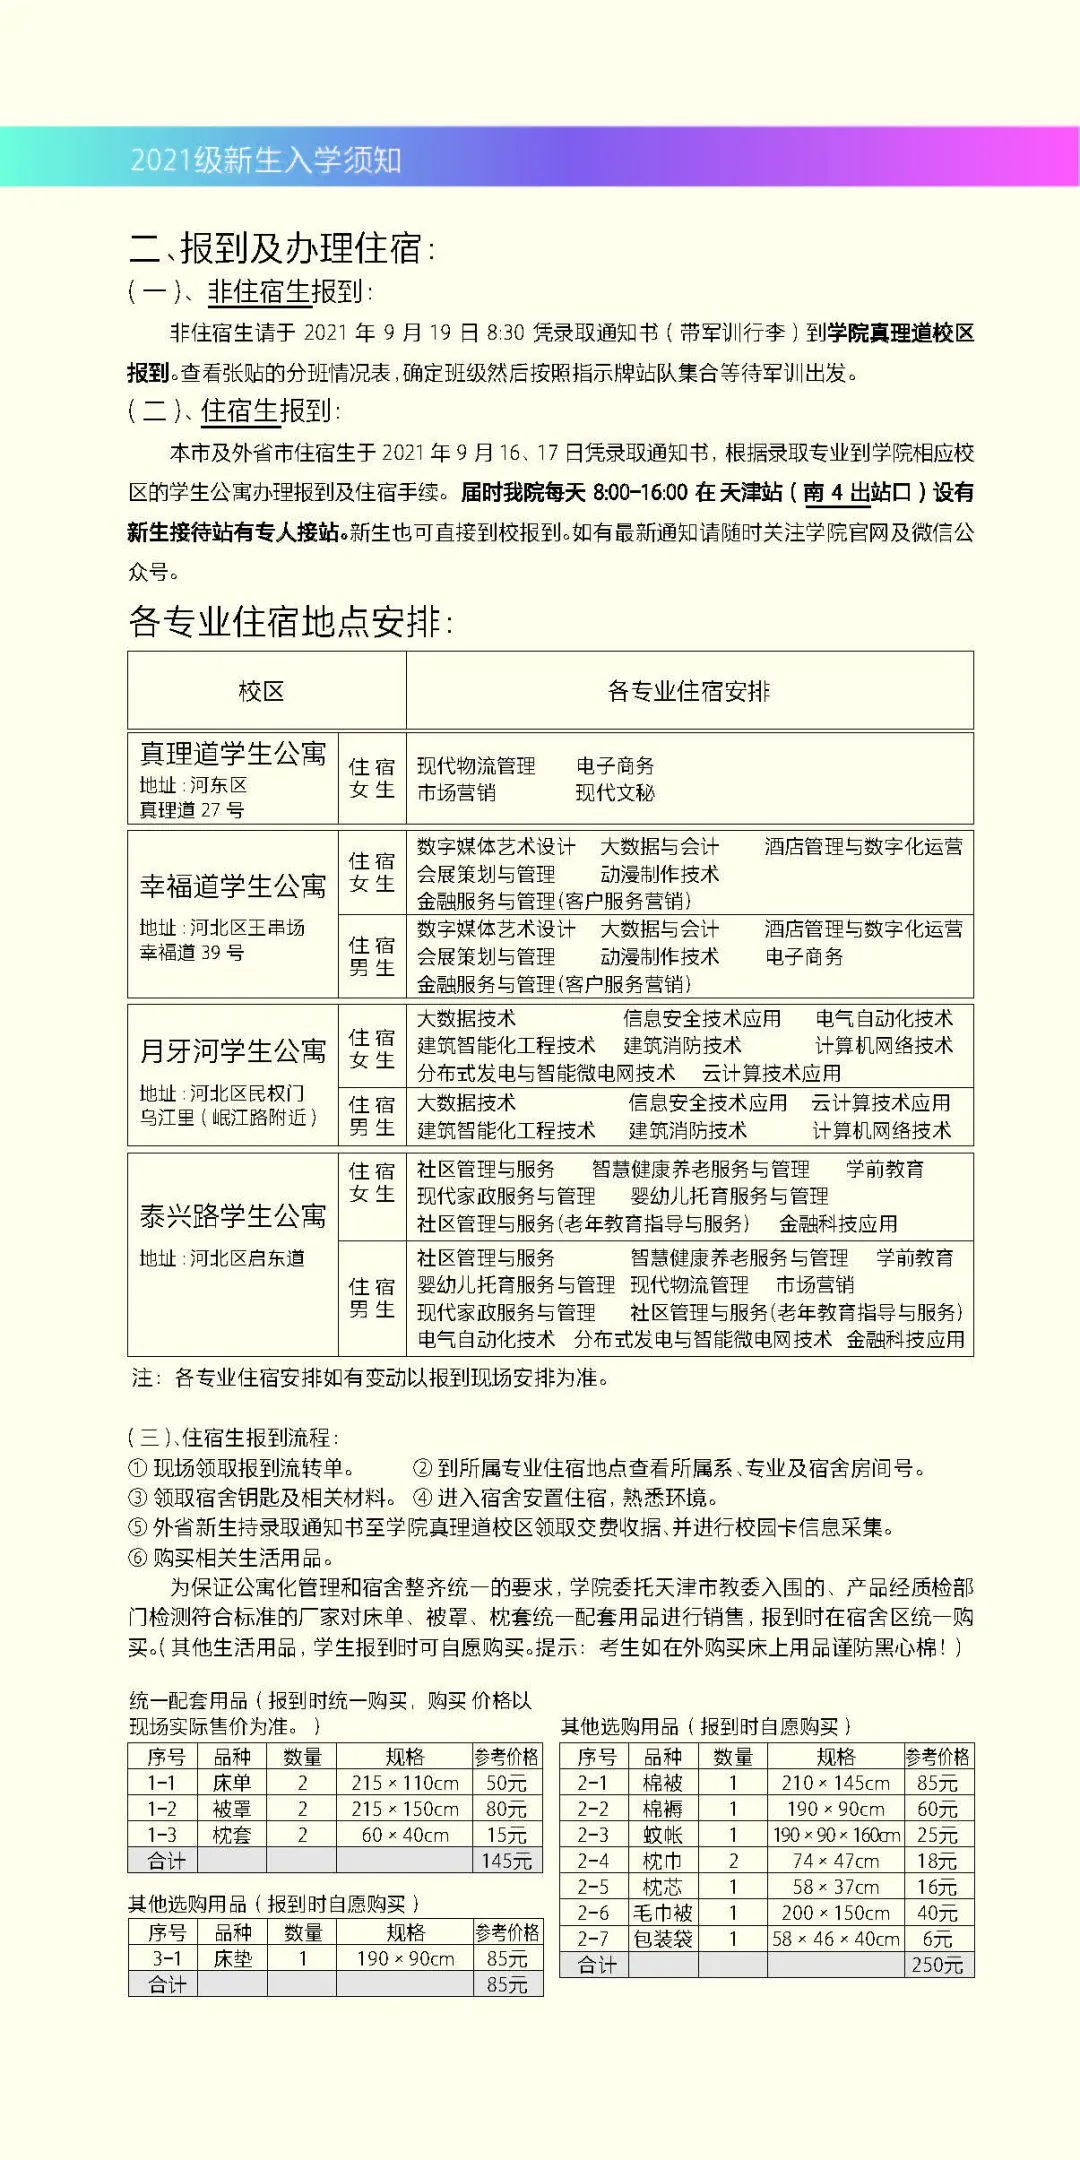 天津城市职业学院2021级新生入学须知（限天津春季高考新生、外省普通高考新生使用）